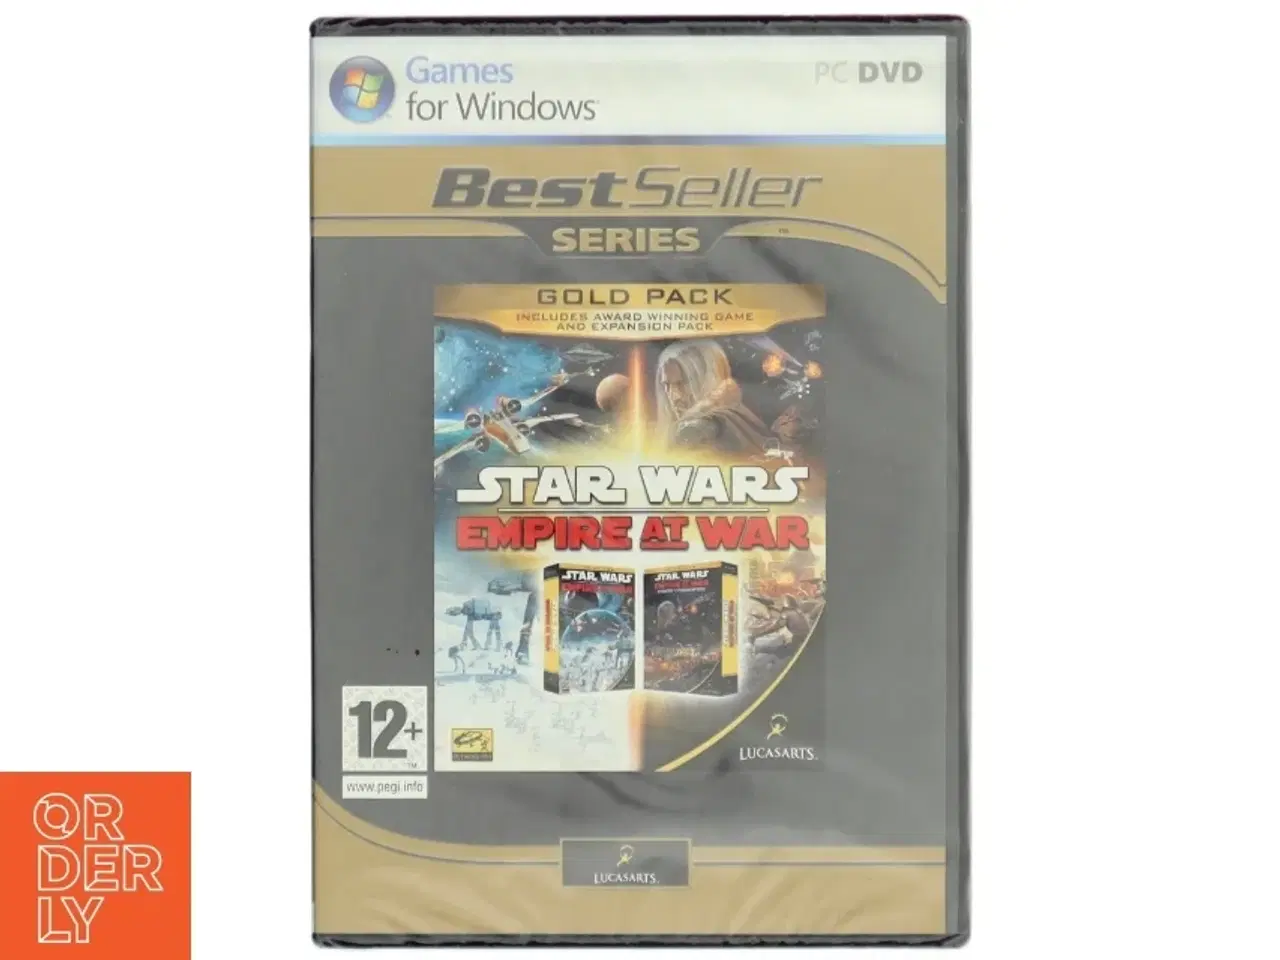 Billede 1 - Star Wars: Empire at War Gold Pack PC-spil fra LucasArts